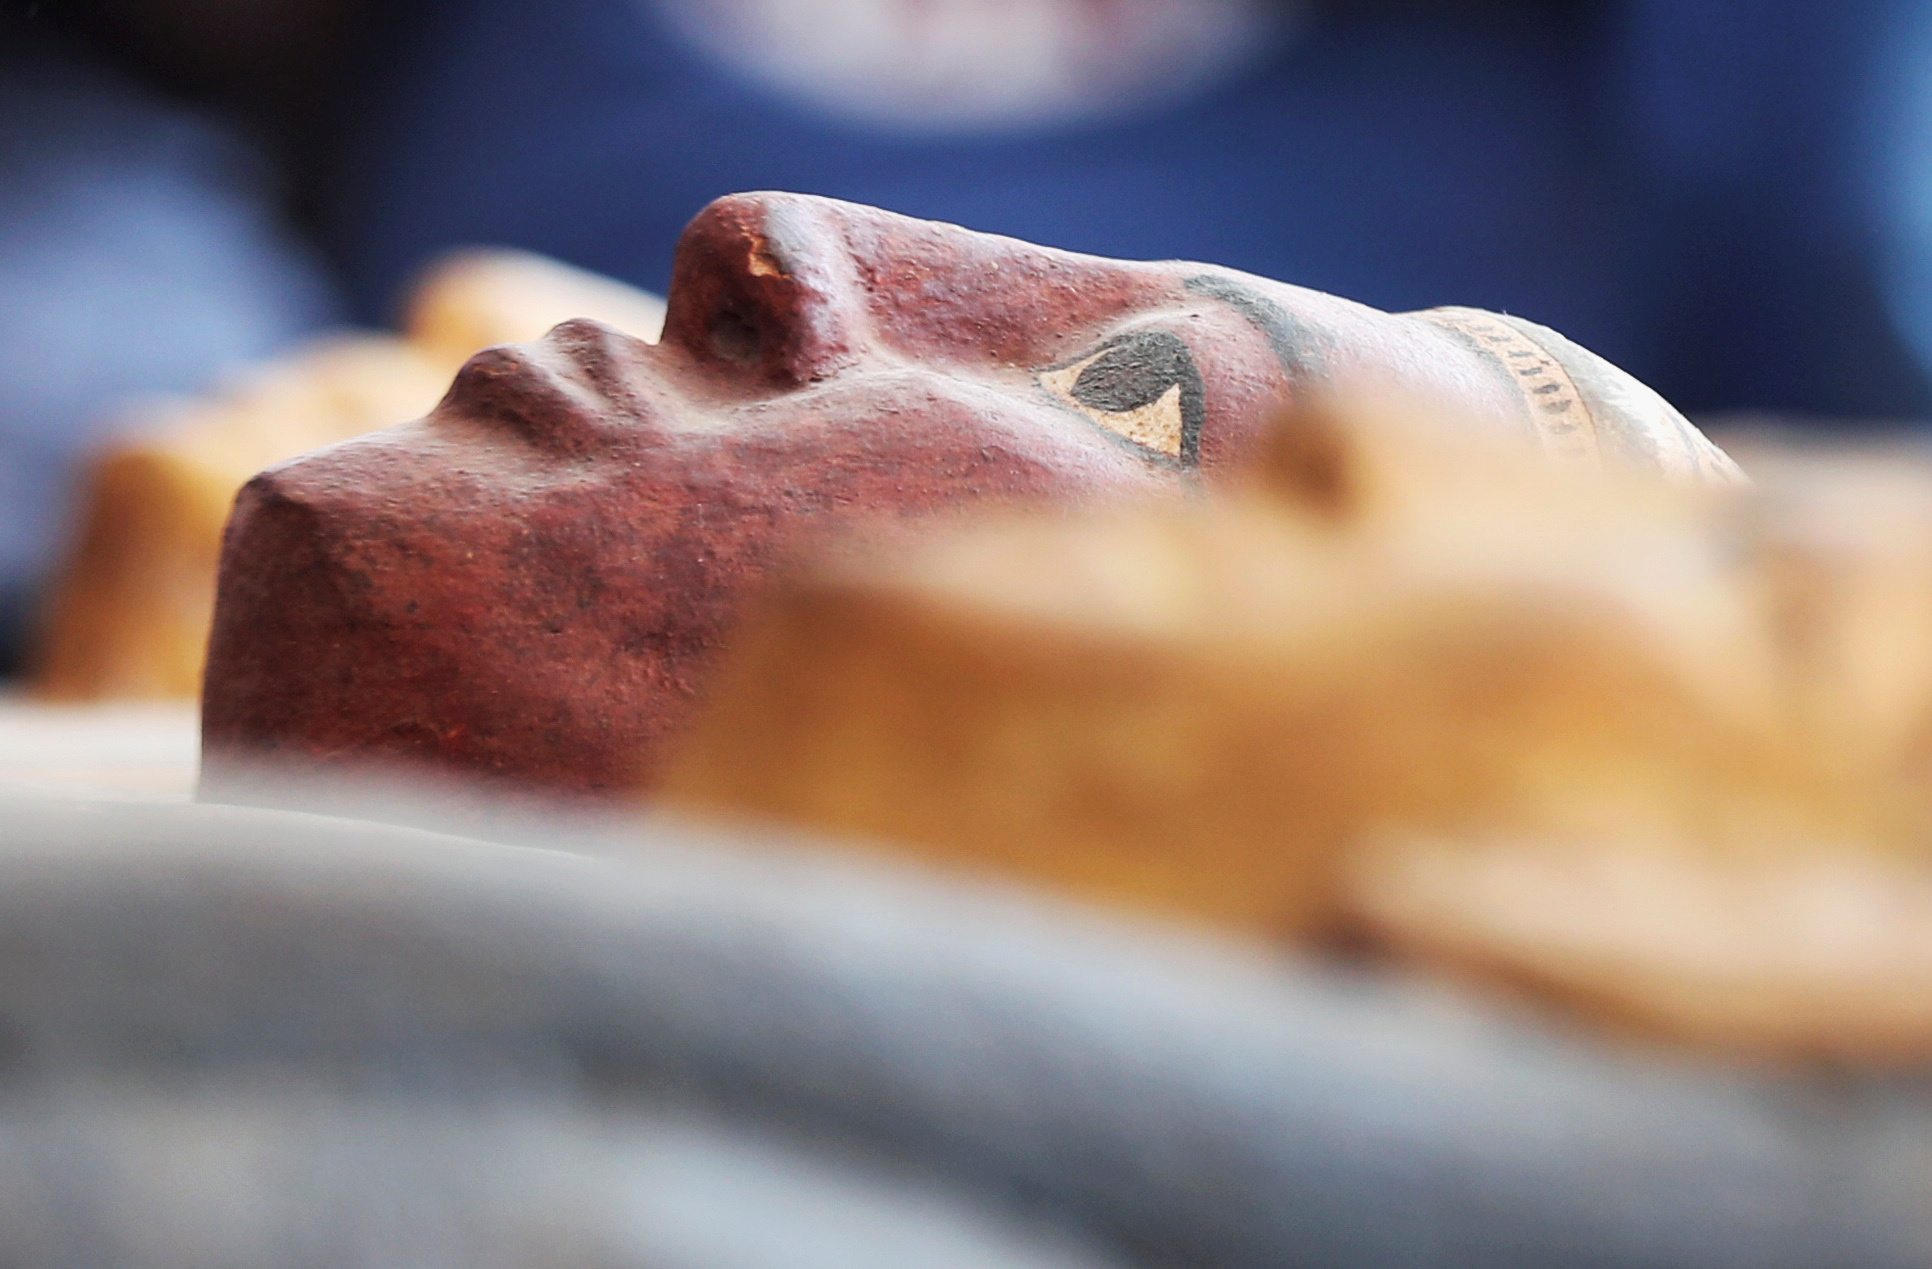 Αίγυπτος: Δέος! Ανακαλύφθηκαν 59 σαρκοφάγοι στη Νεκρόπολη της Σακκάρα (pics) 